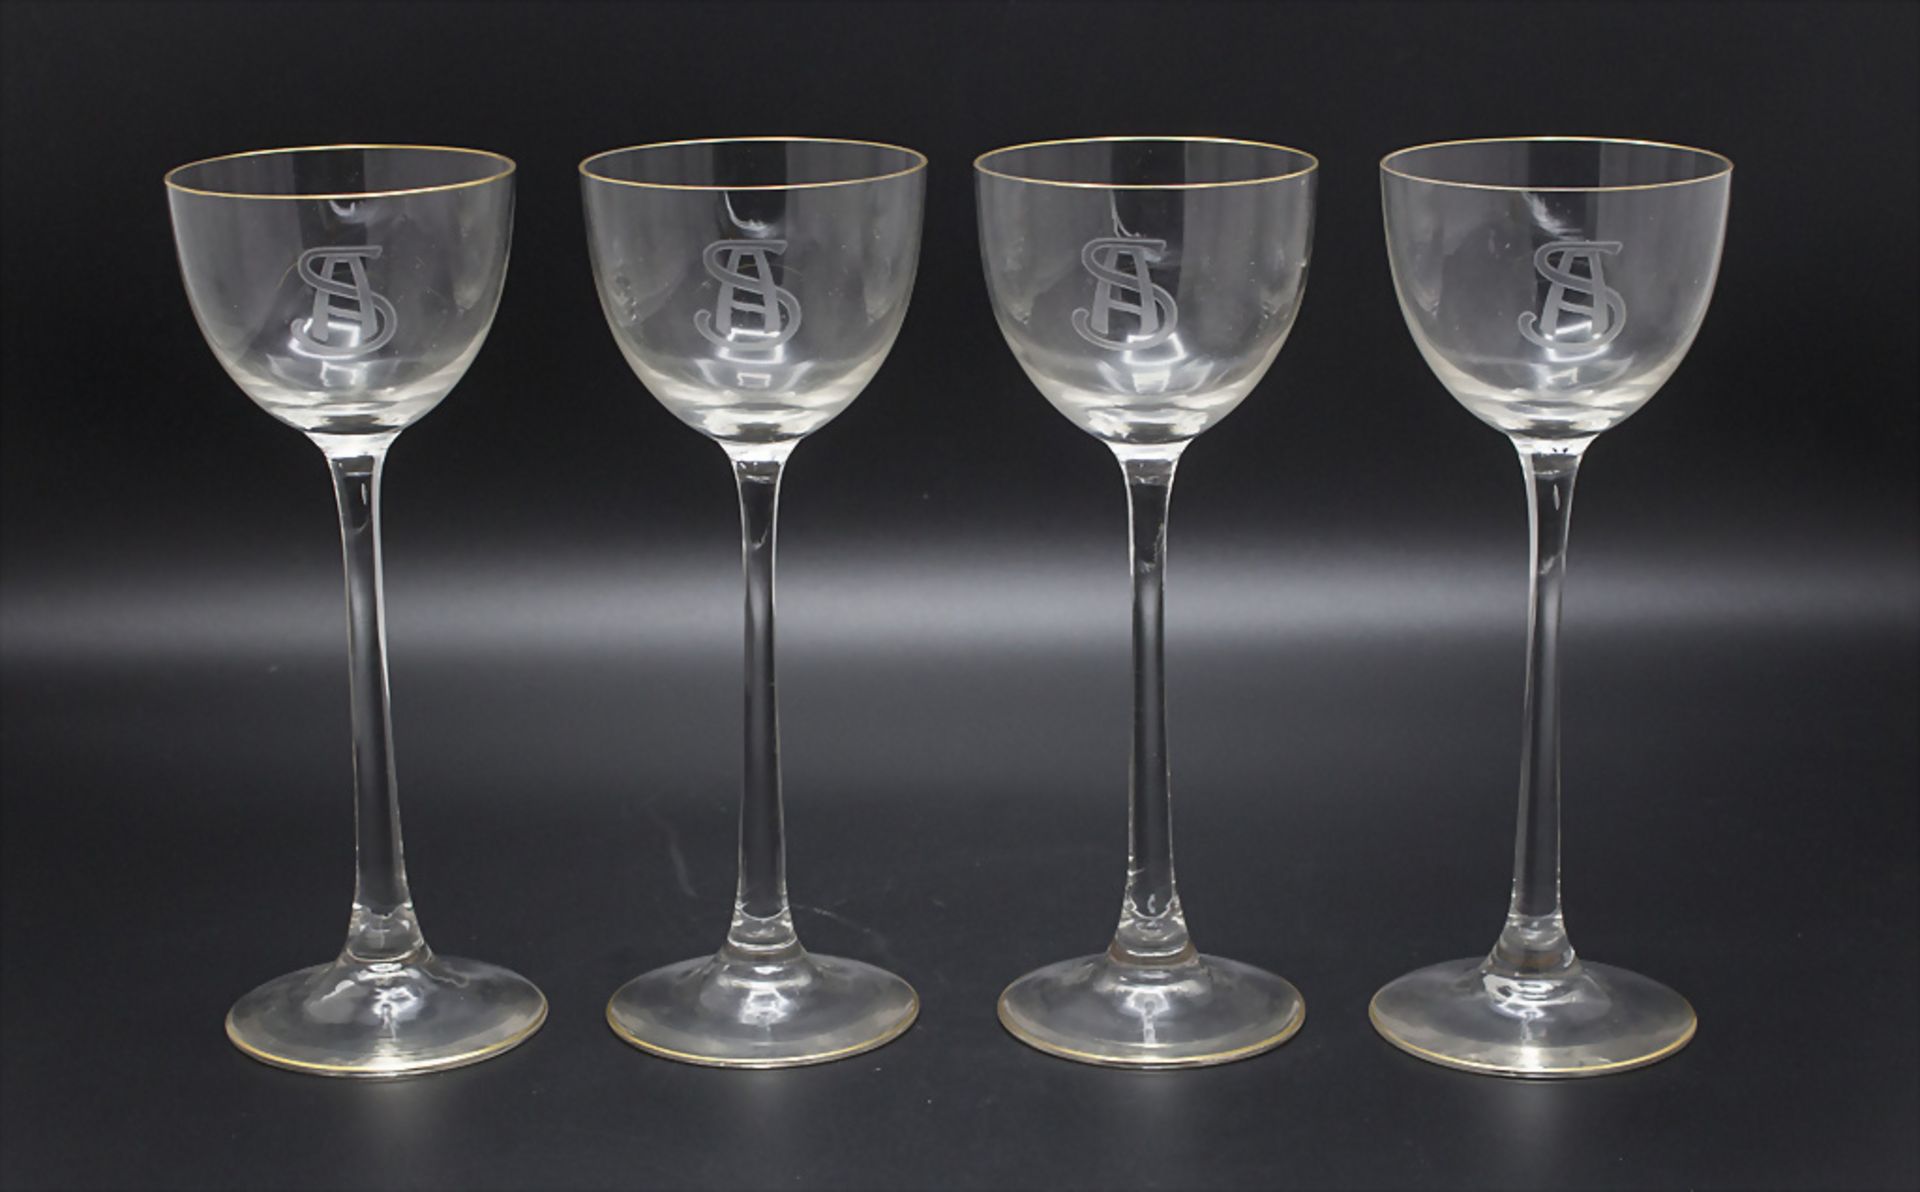 4 Jugendstil Stengelgläser / 4 Art Nouveau glasses, wohl Theresienthal, Anfang 20. Jh.